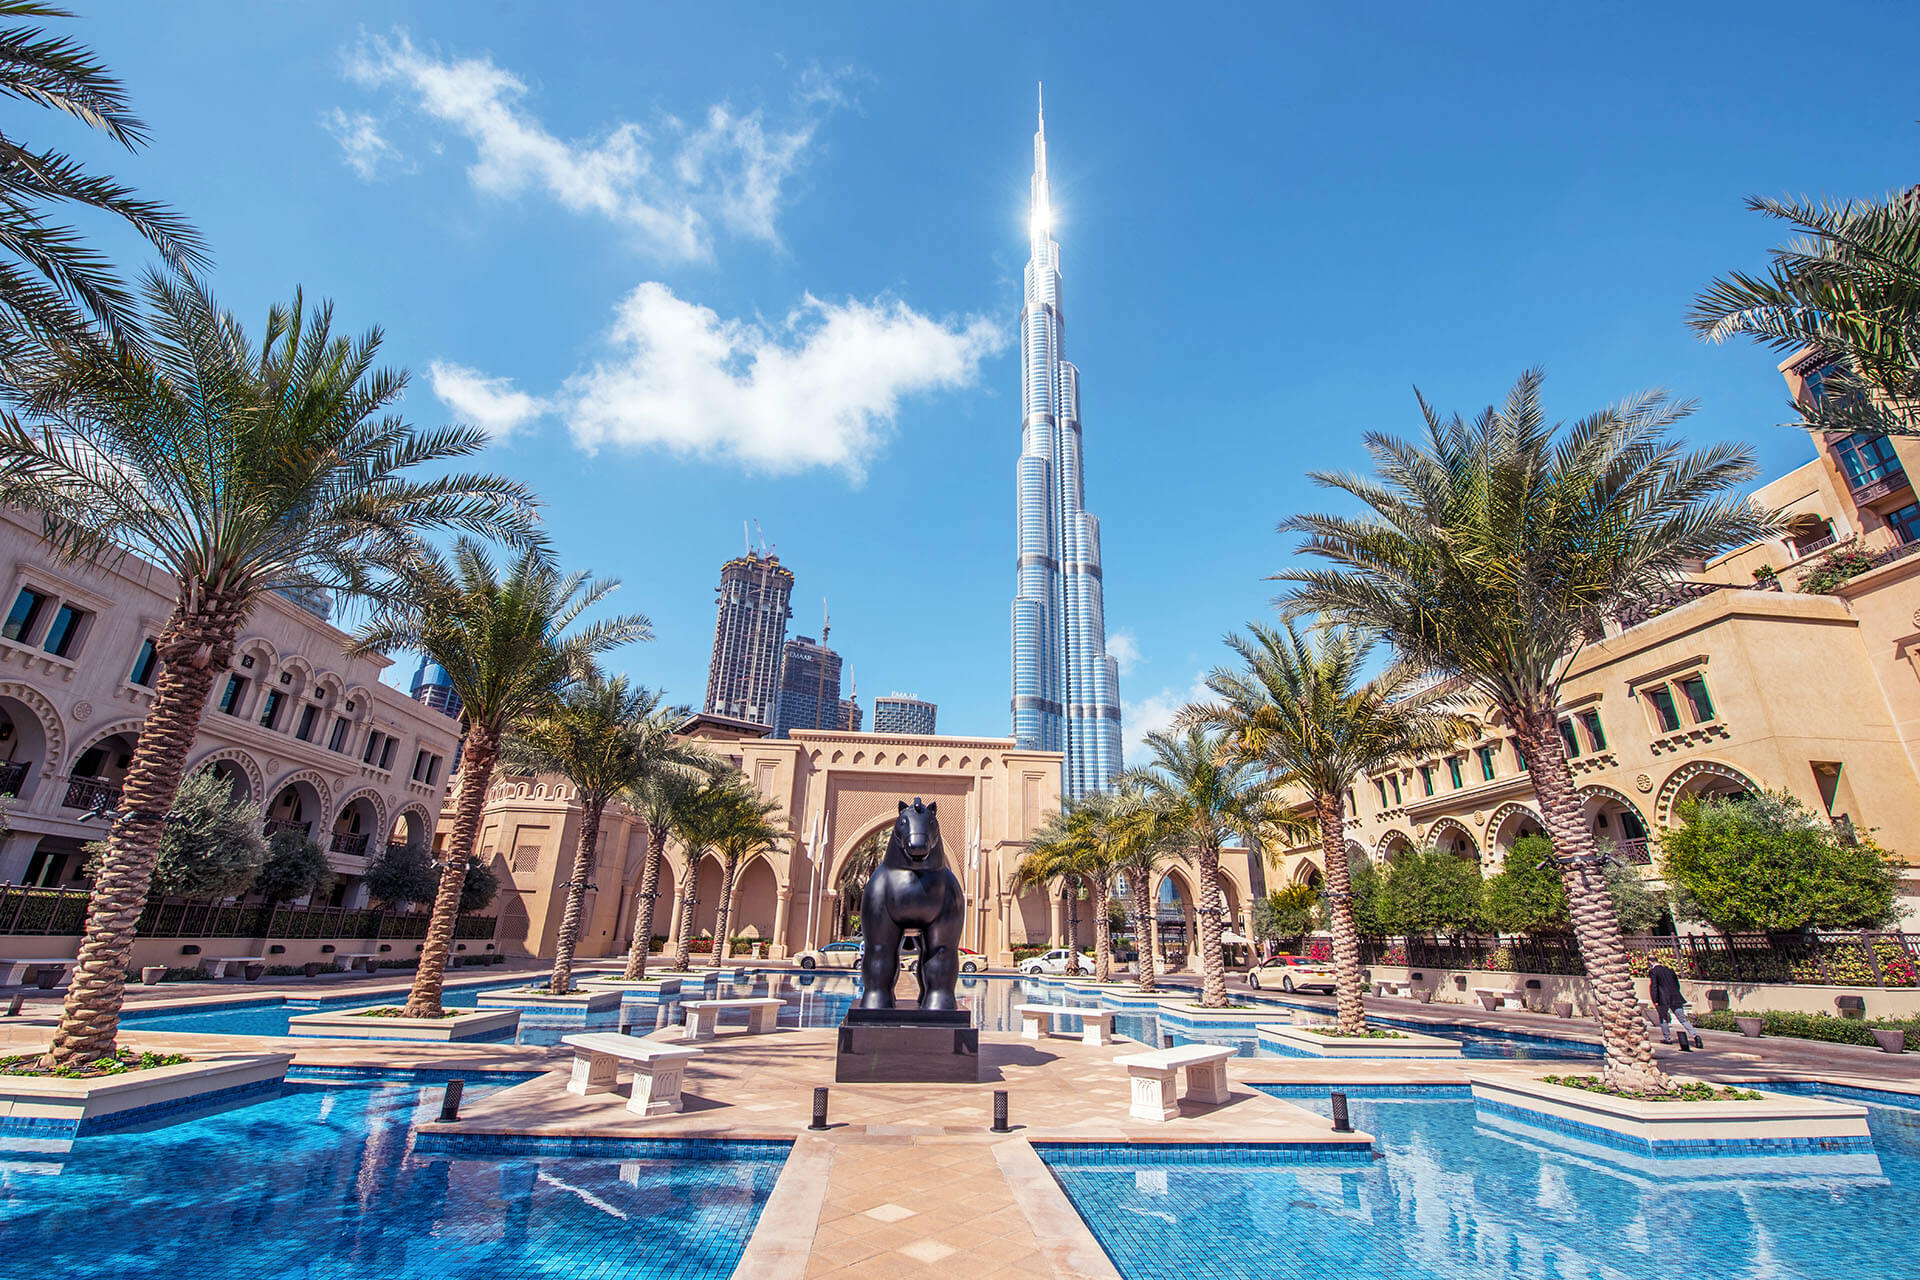 UAE: Extension of Emiratization Deadline Until July 7, 2023